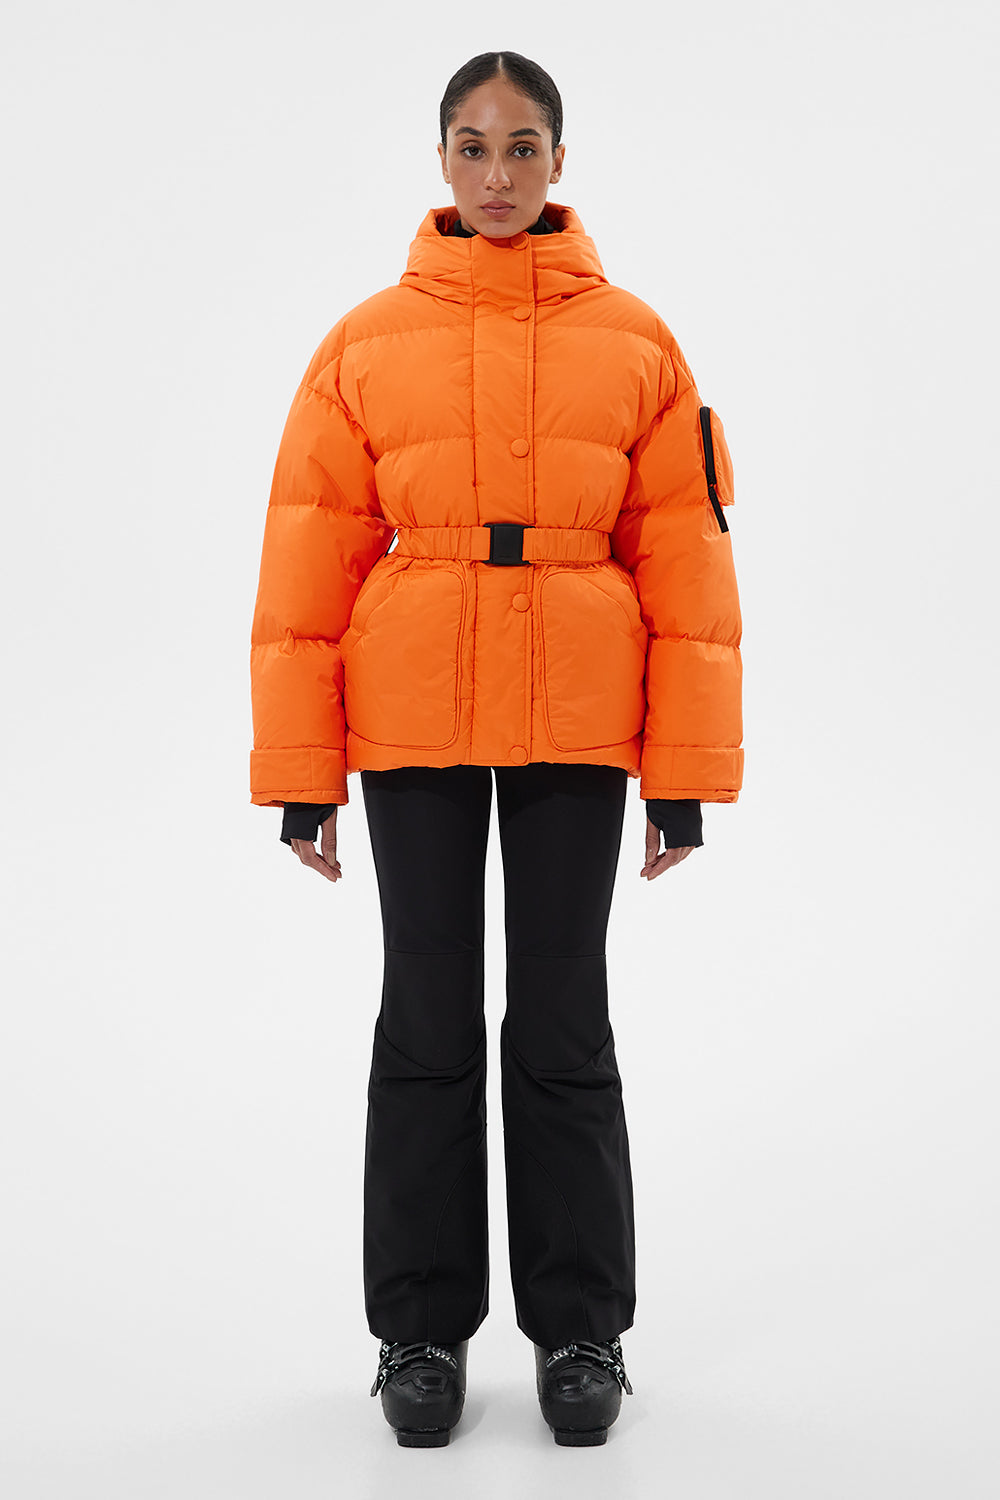 Apres Ski Michlin Jacket Tec Orange